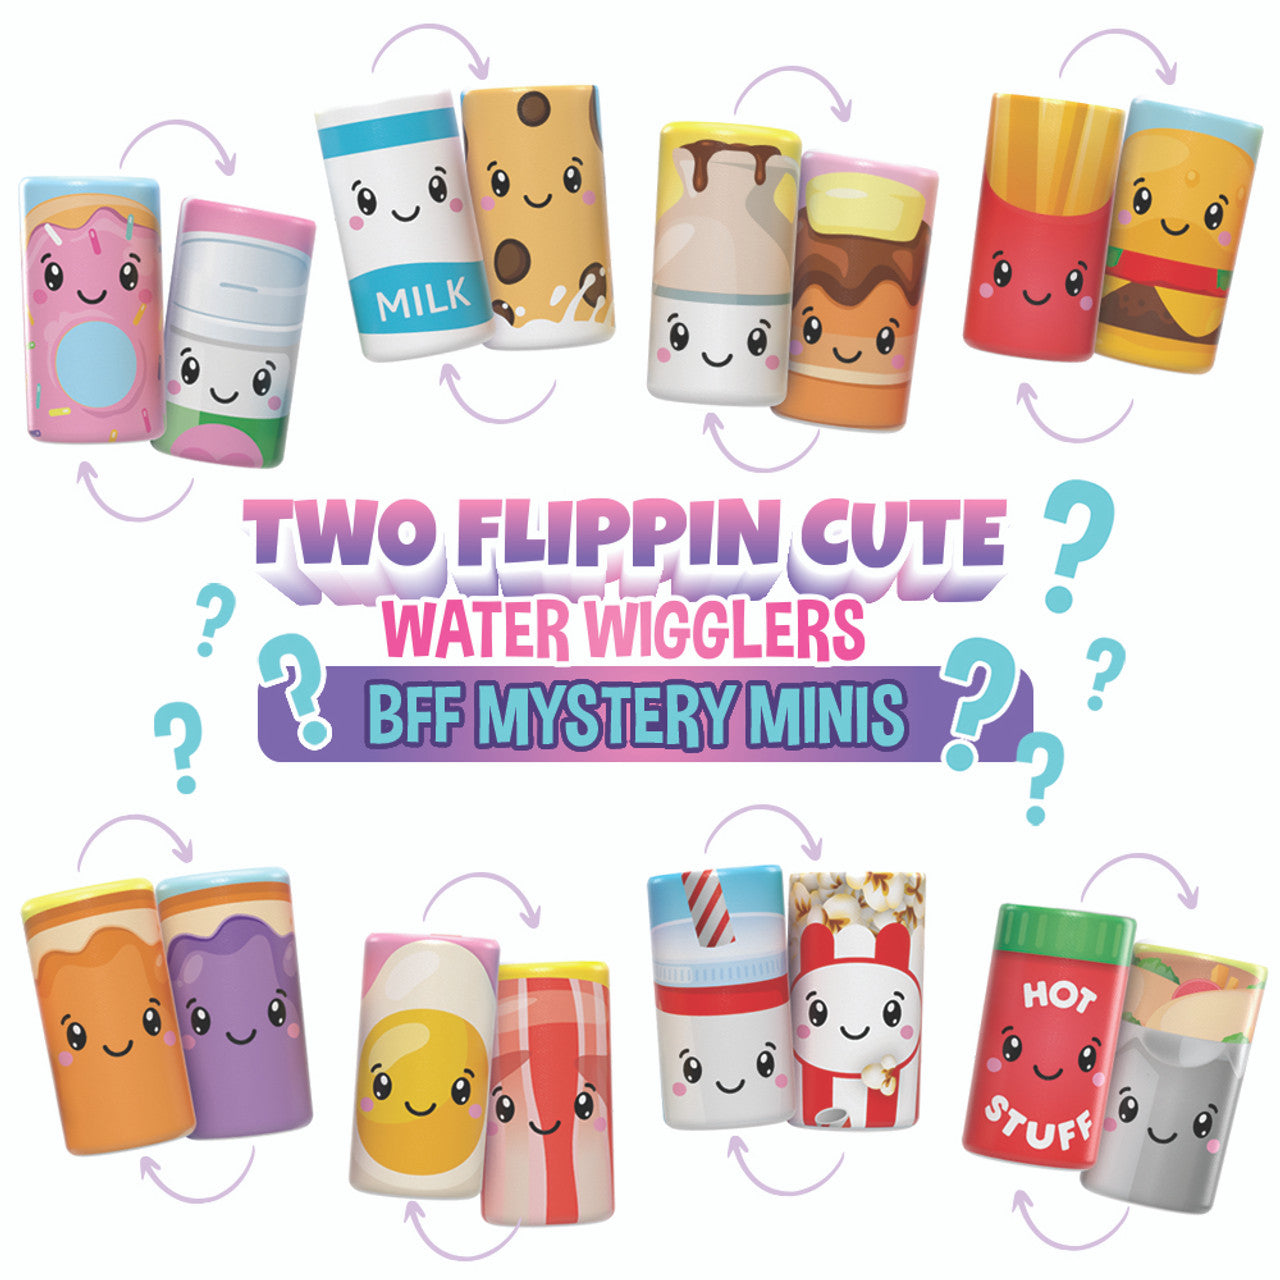 BFF Mystery Mini Water Wigglers